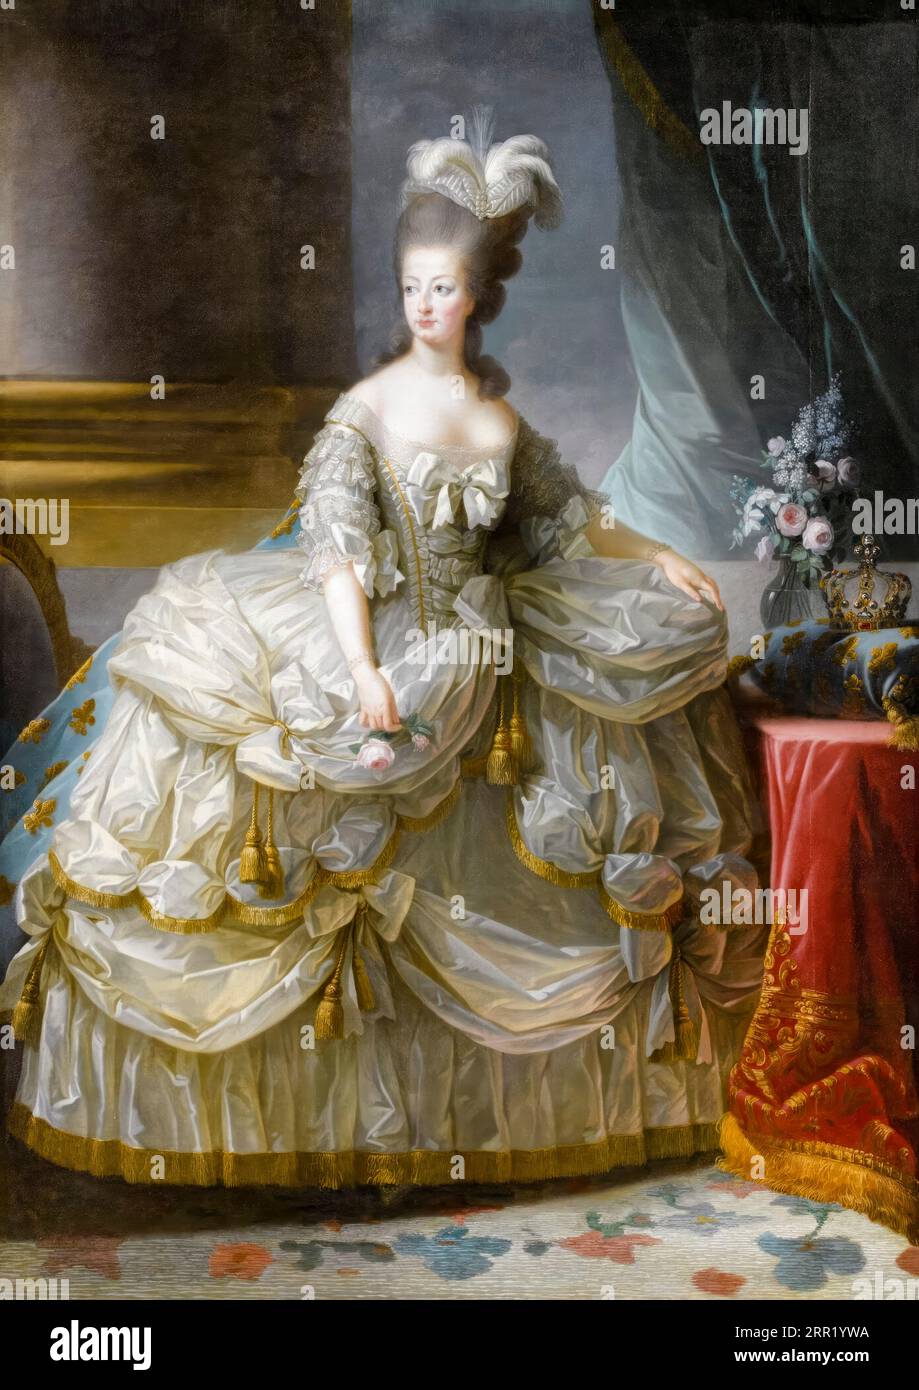 Marie-Antoinette, Reine de France (1755-1793), portrait à l'huile sur toile d'Elisabeth Vigee le Brun, 1778 Banque D'Images